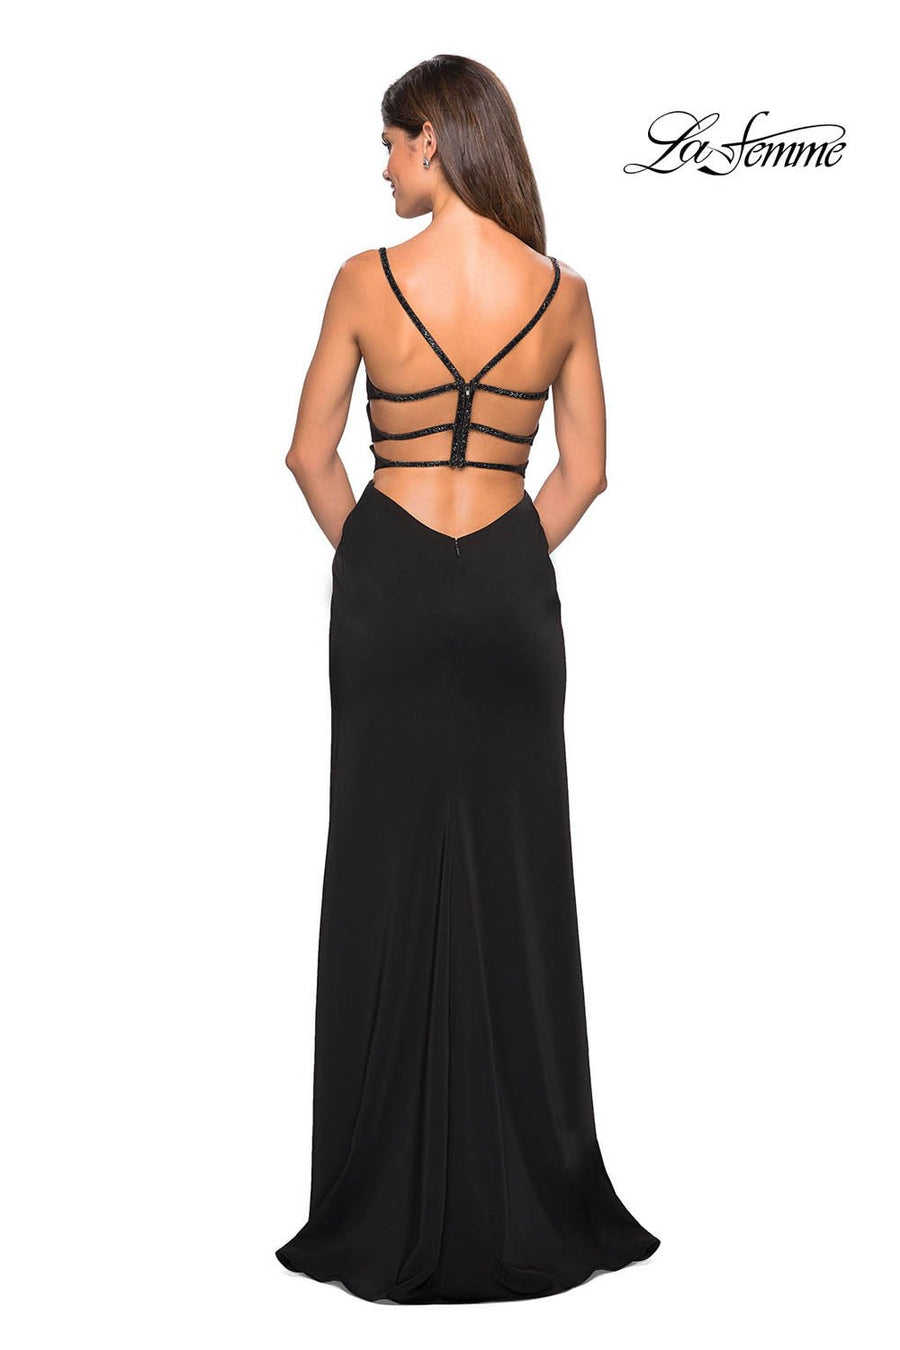 La Femme 27060 prom dress images.  La Femme 27060 is available in these colors: Black, Blush, Cloud Blue.